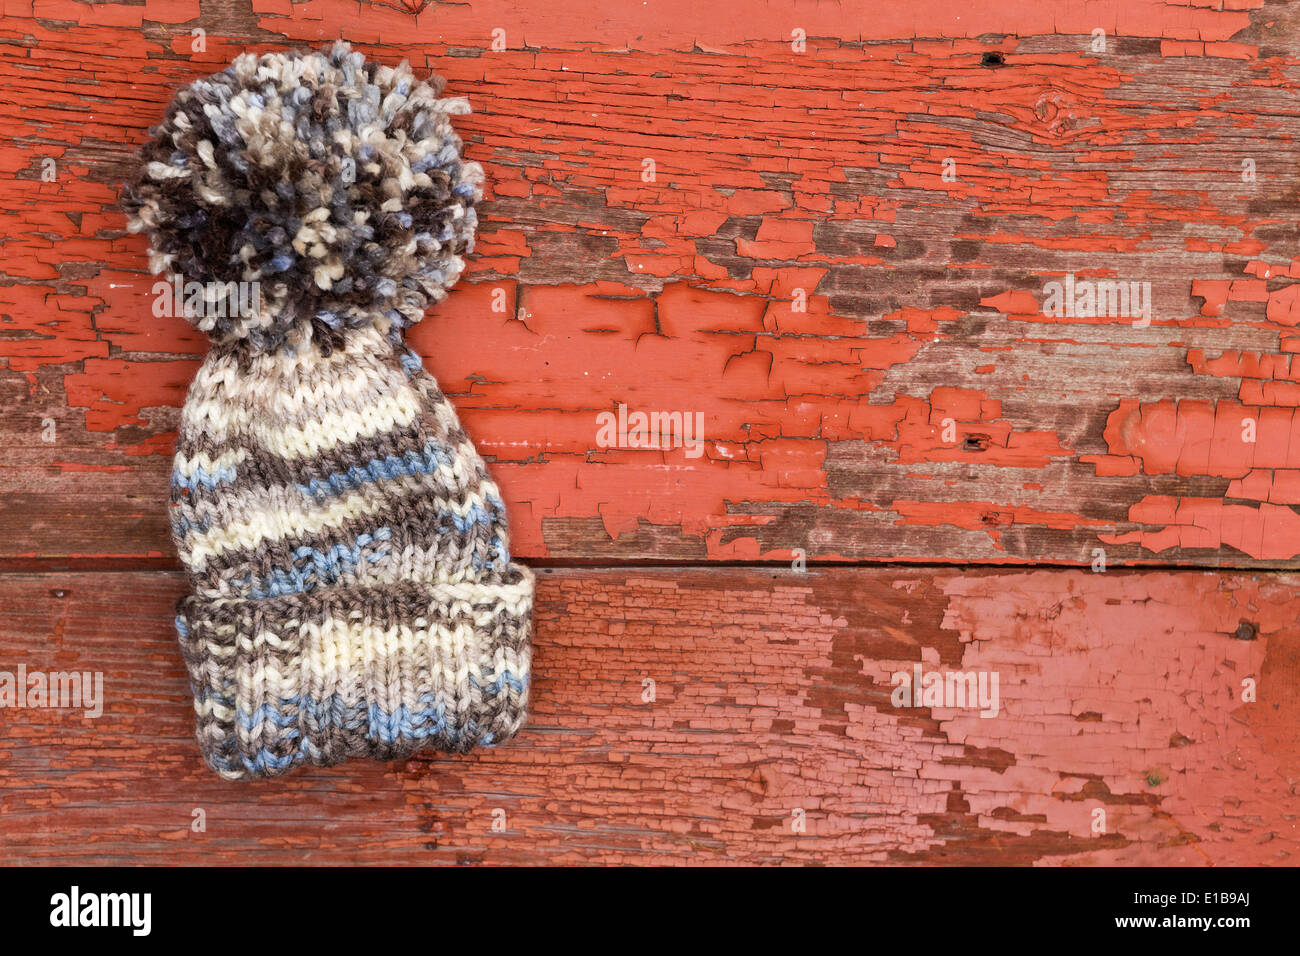 Carino caldo inverno lana hat con un grande pompom giacente su un vecchio legno Tavolo picnic con un grungy superficie di peeling vernice rossa Foto Stock